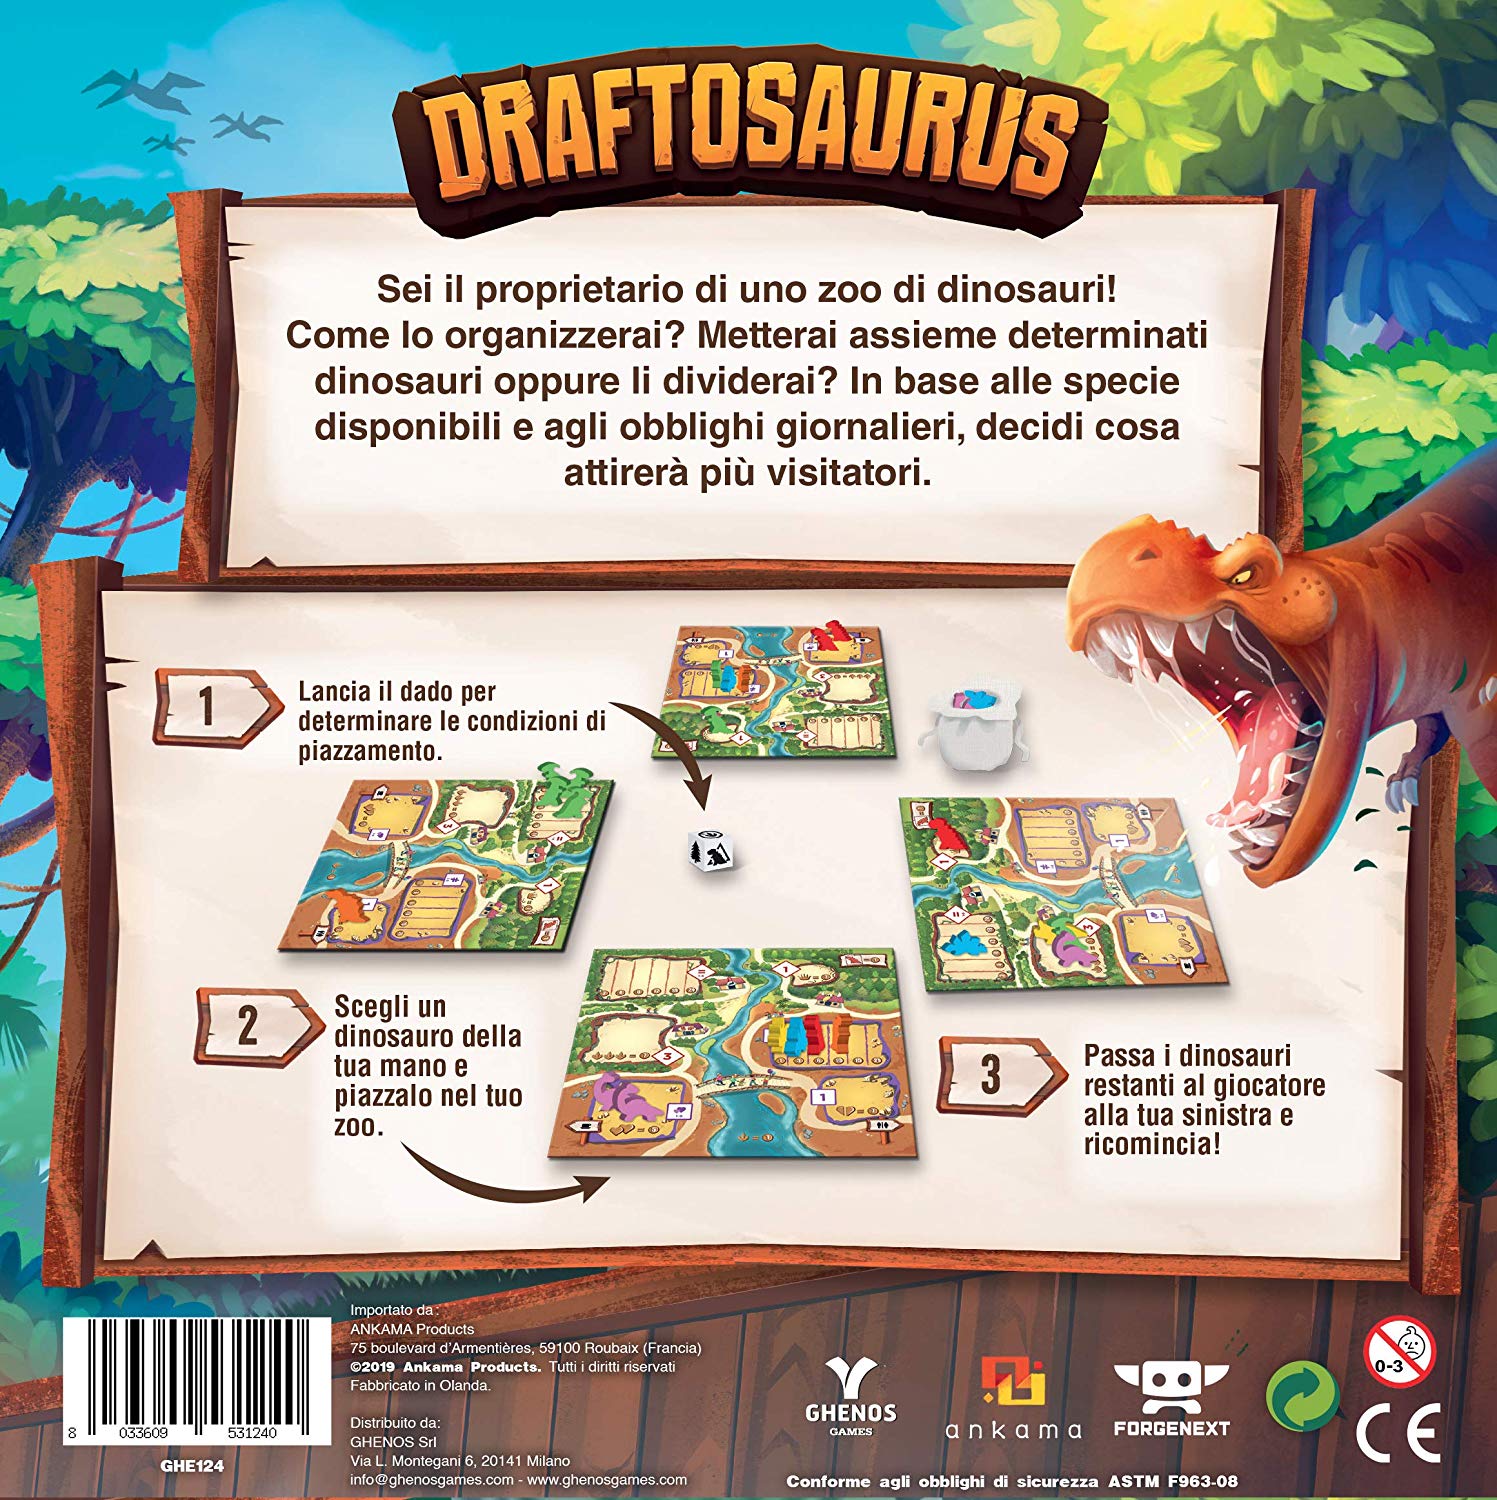 Draftsaurus